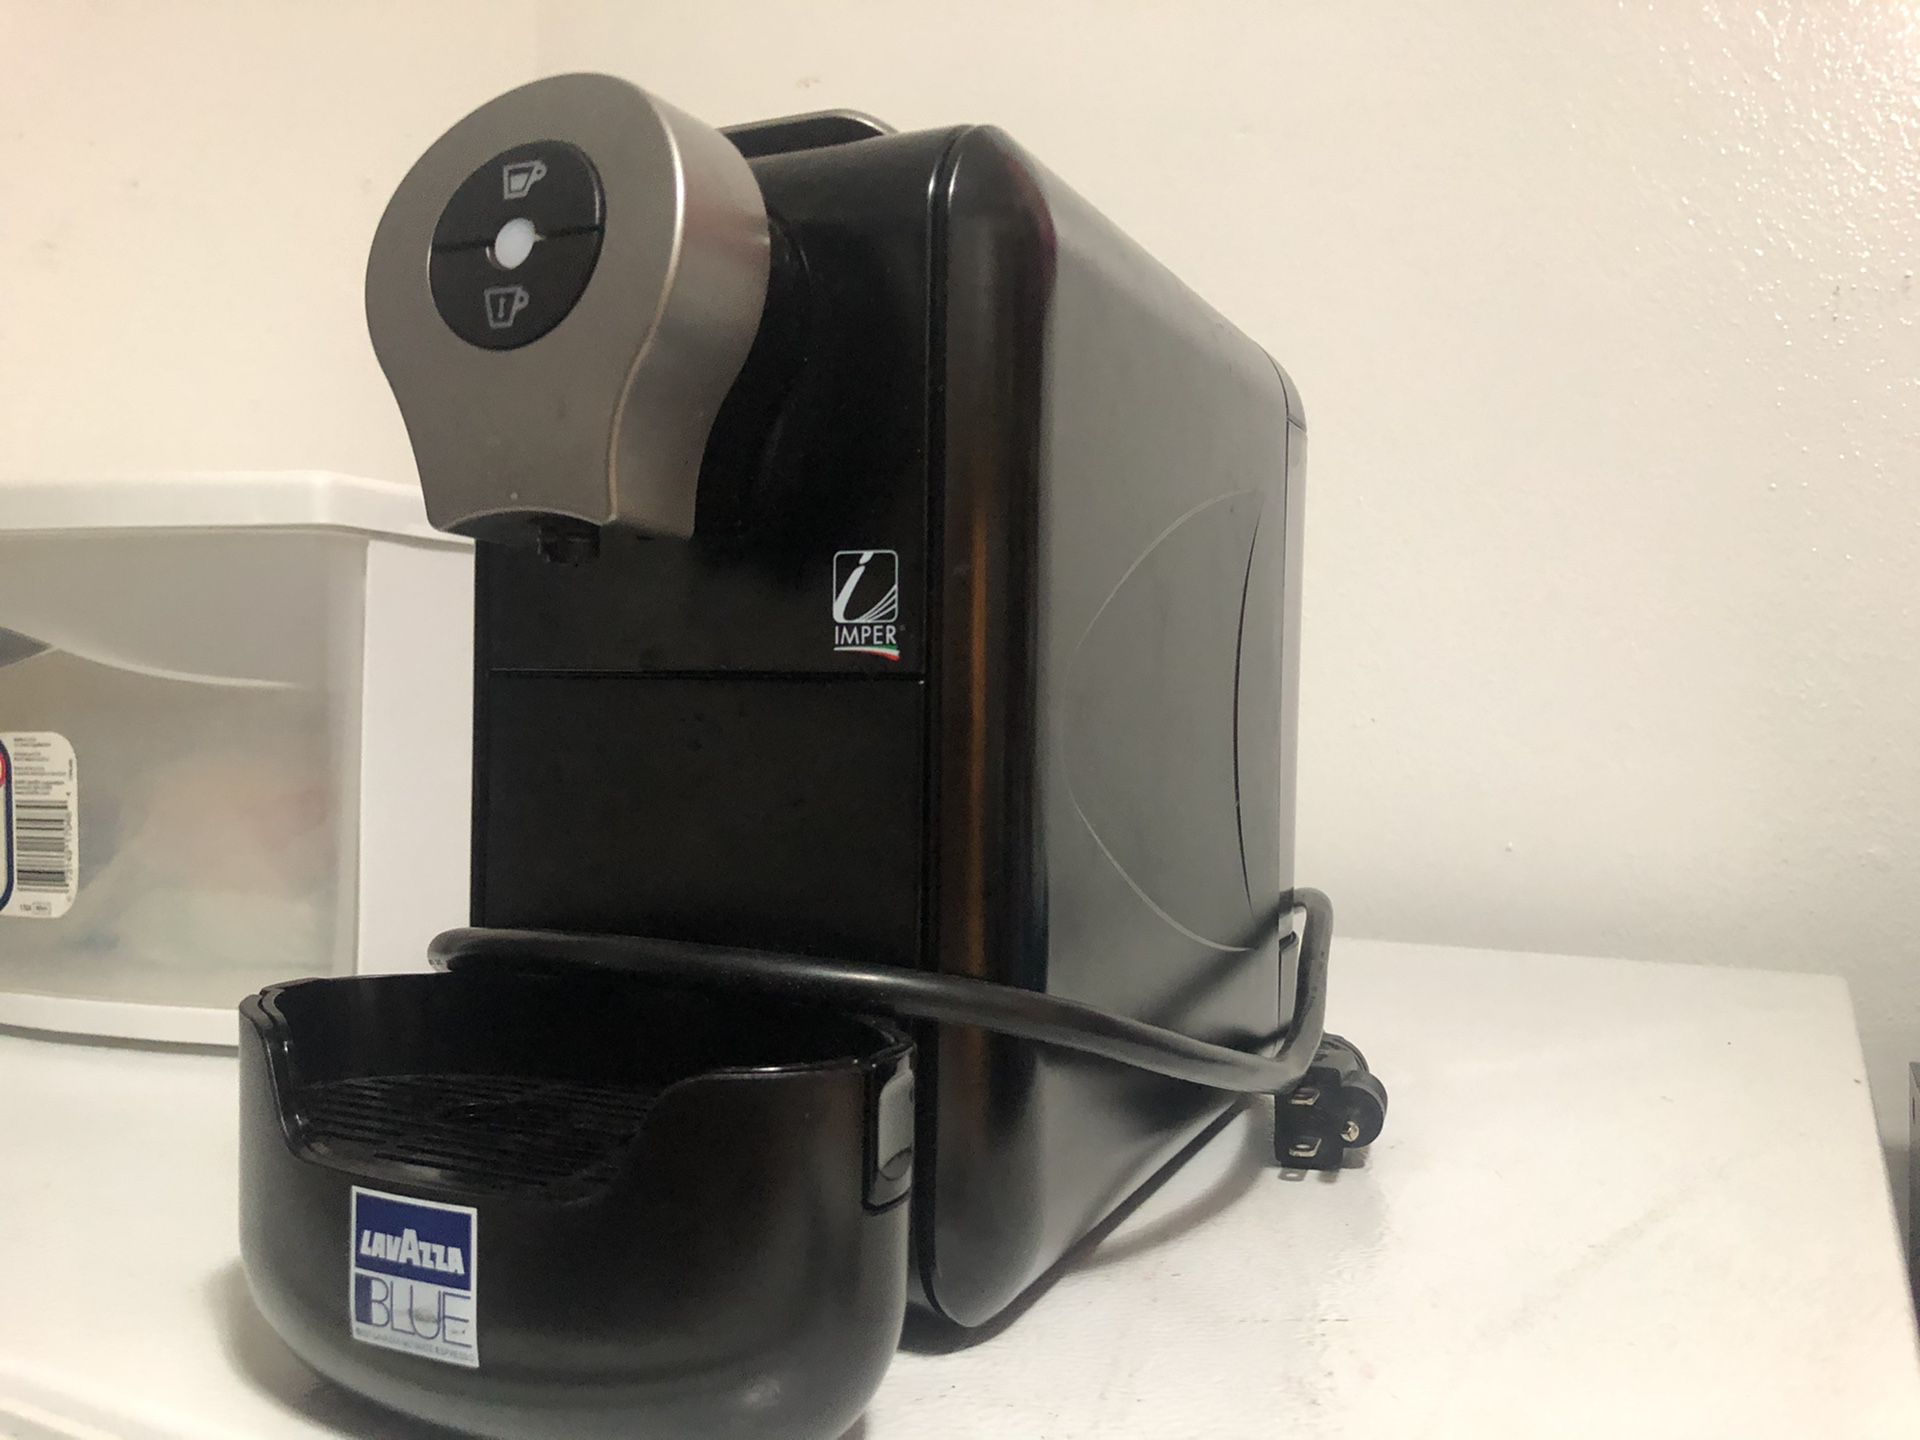  Lavazza Blue Single Serve Espresso Machine LB910: Home